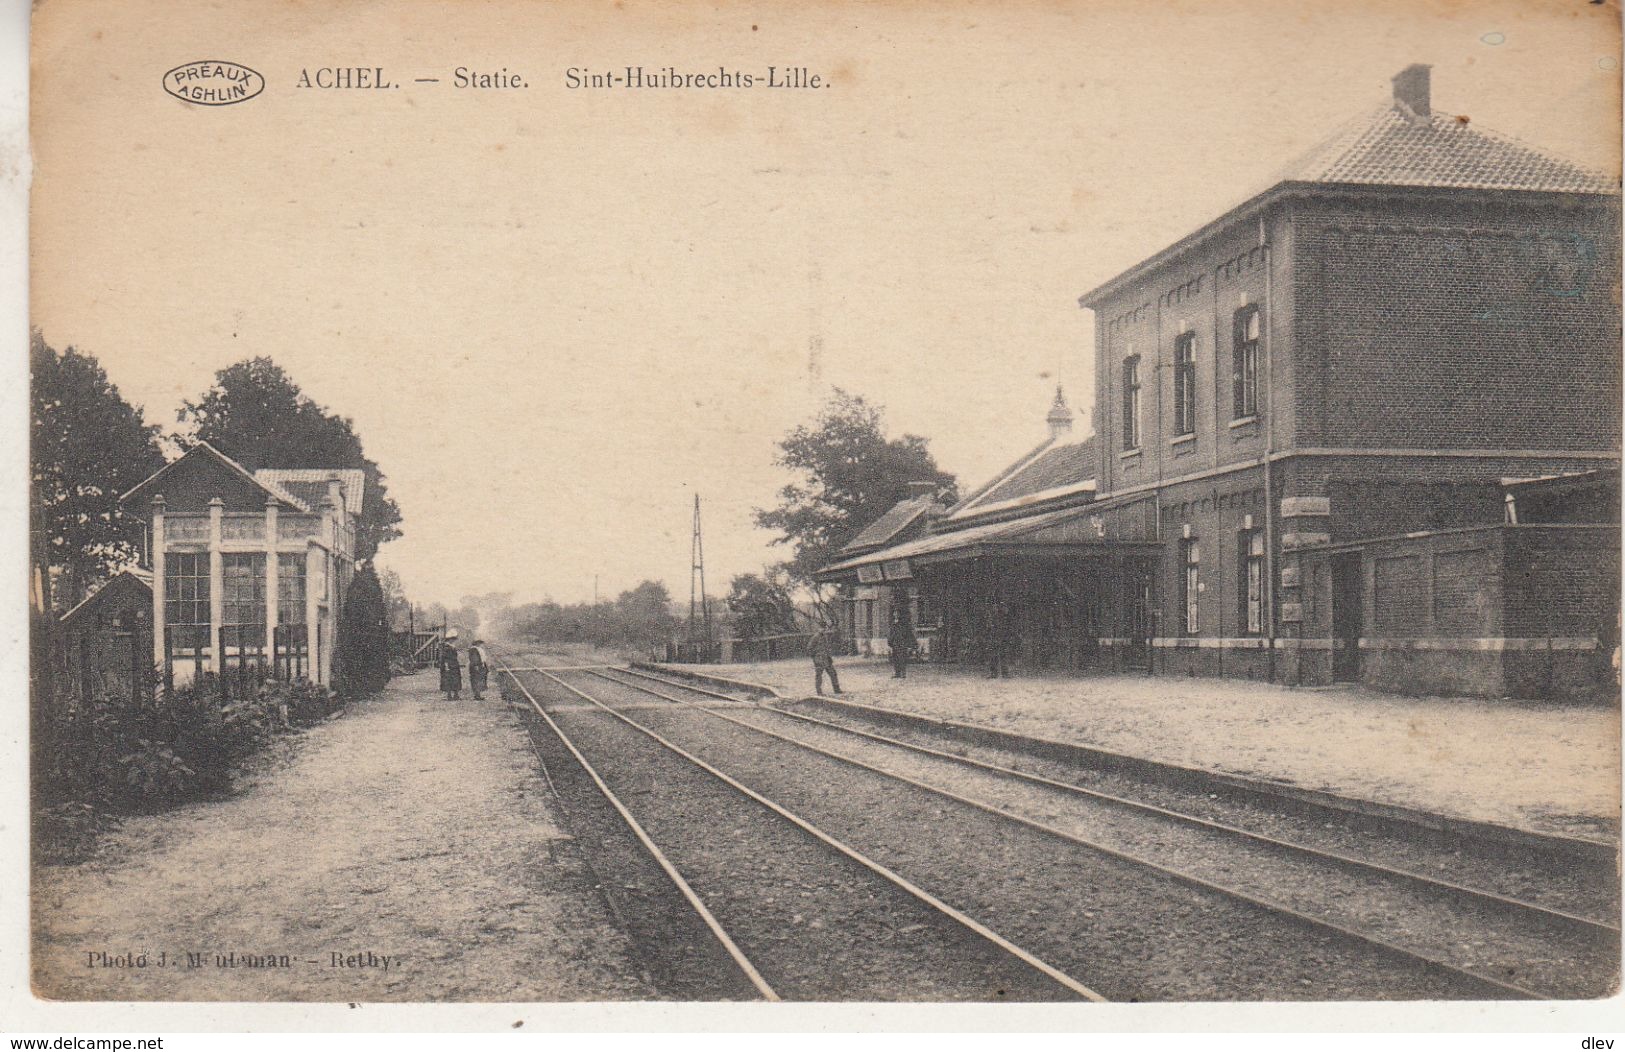 Achel - Statie - Sint-Huibrechts-Lille - Photo J. Meuleman, Rethy/Préaux - Stations Without Trains